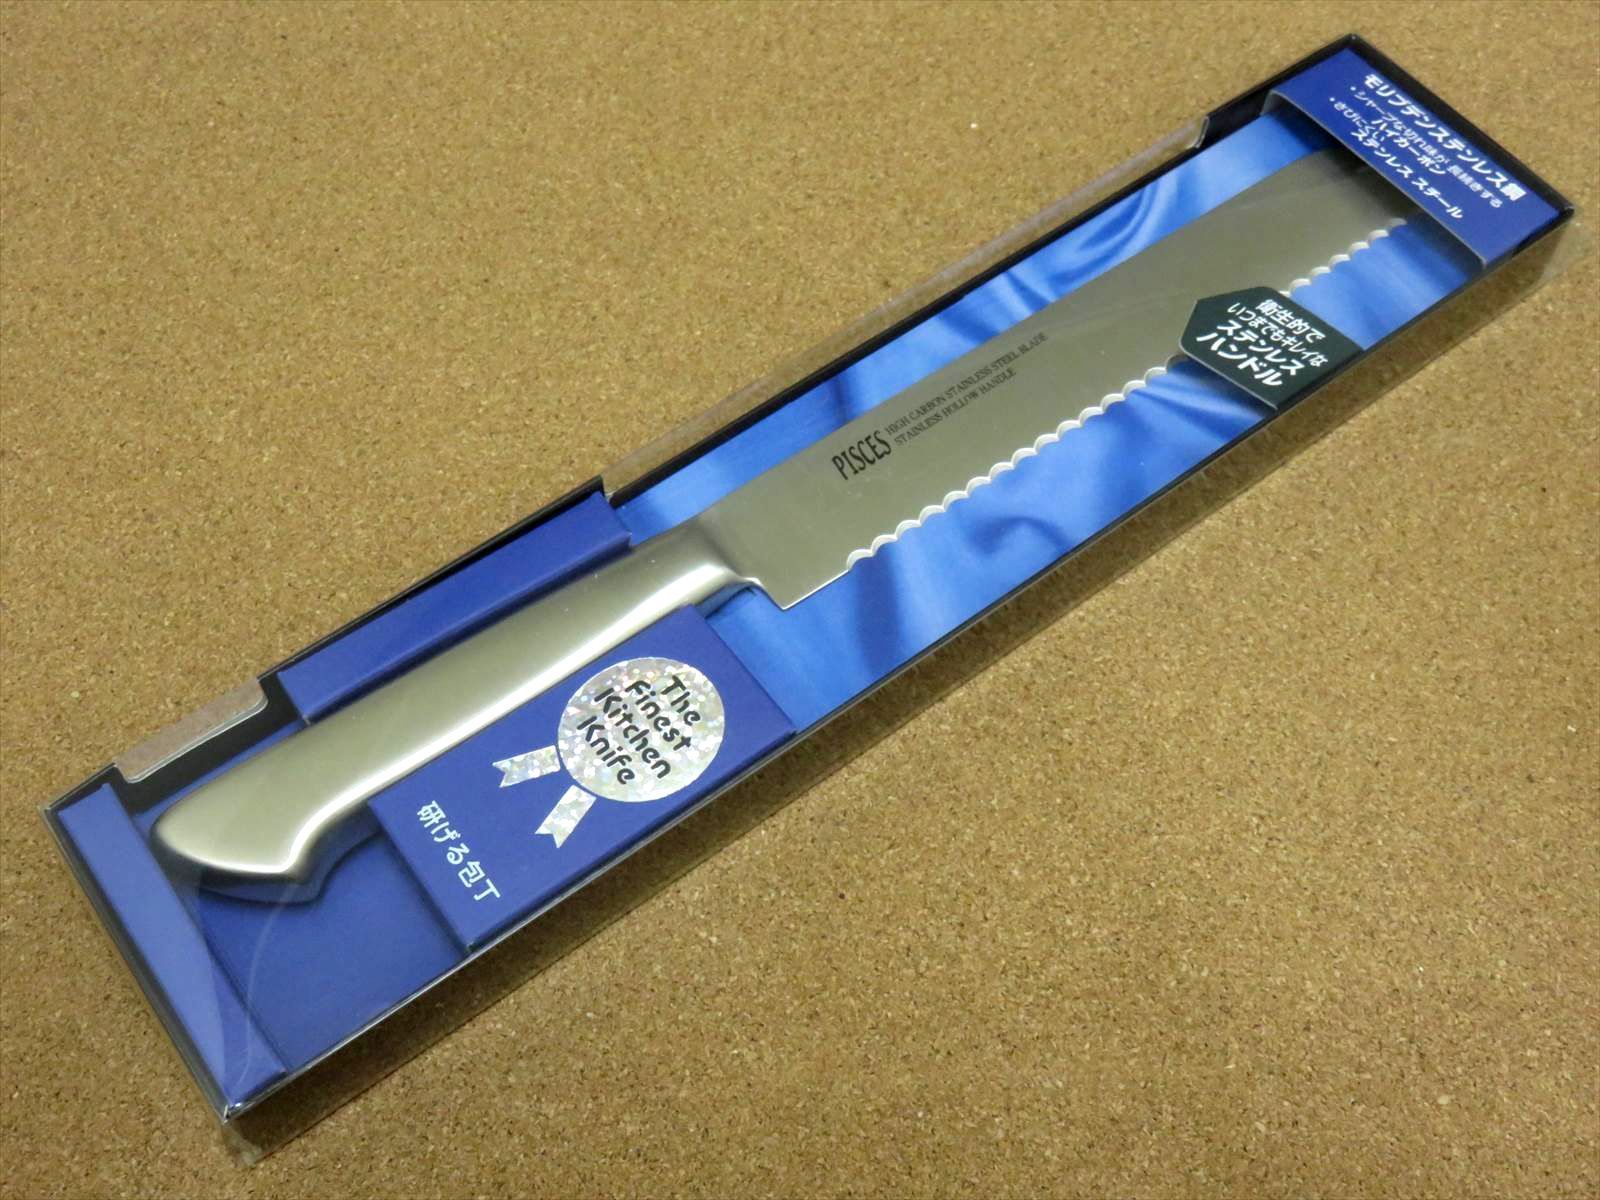 関の刃物 パン切り包丁 19cm (190mm) PISCES (パイシーズ) モリブデン ステンレス一体型ハンドル 片刃包丁 右利き 波刃 パン切  日本製 - メルカリ